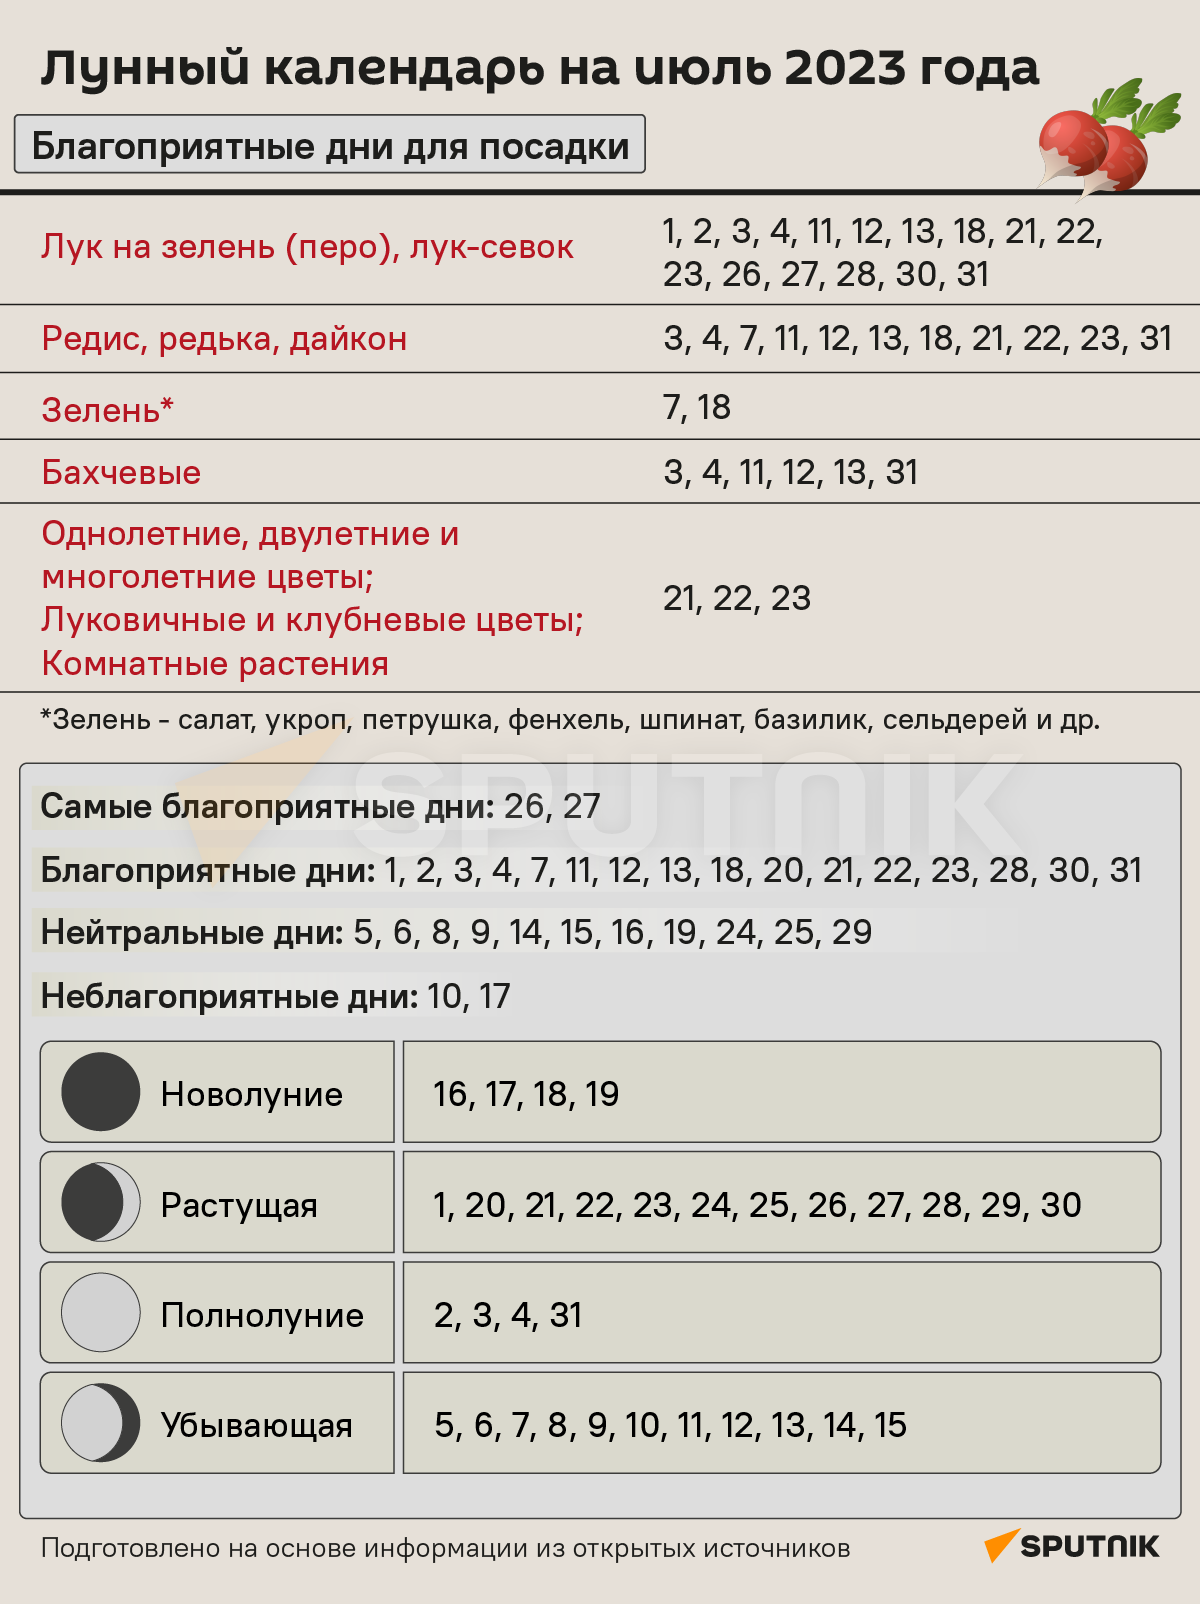 Лунный календарь садовода и огородника на июль 2023 года - Sputnik Беларусь